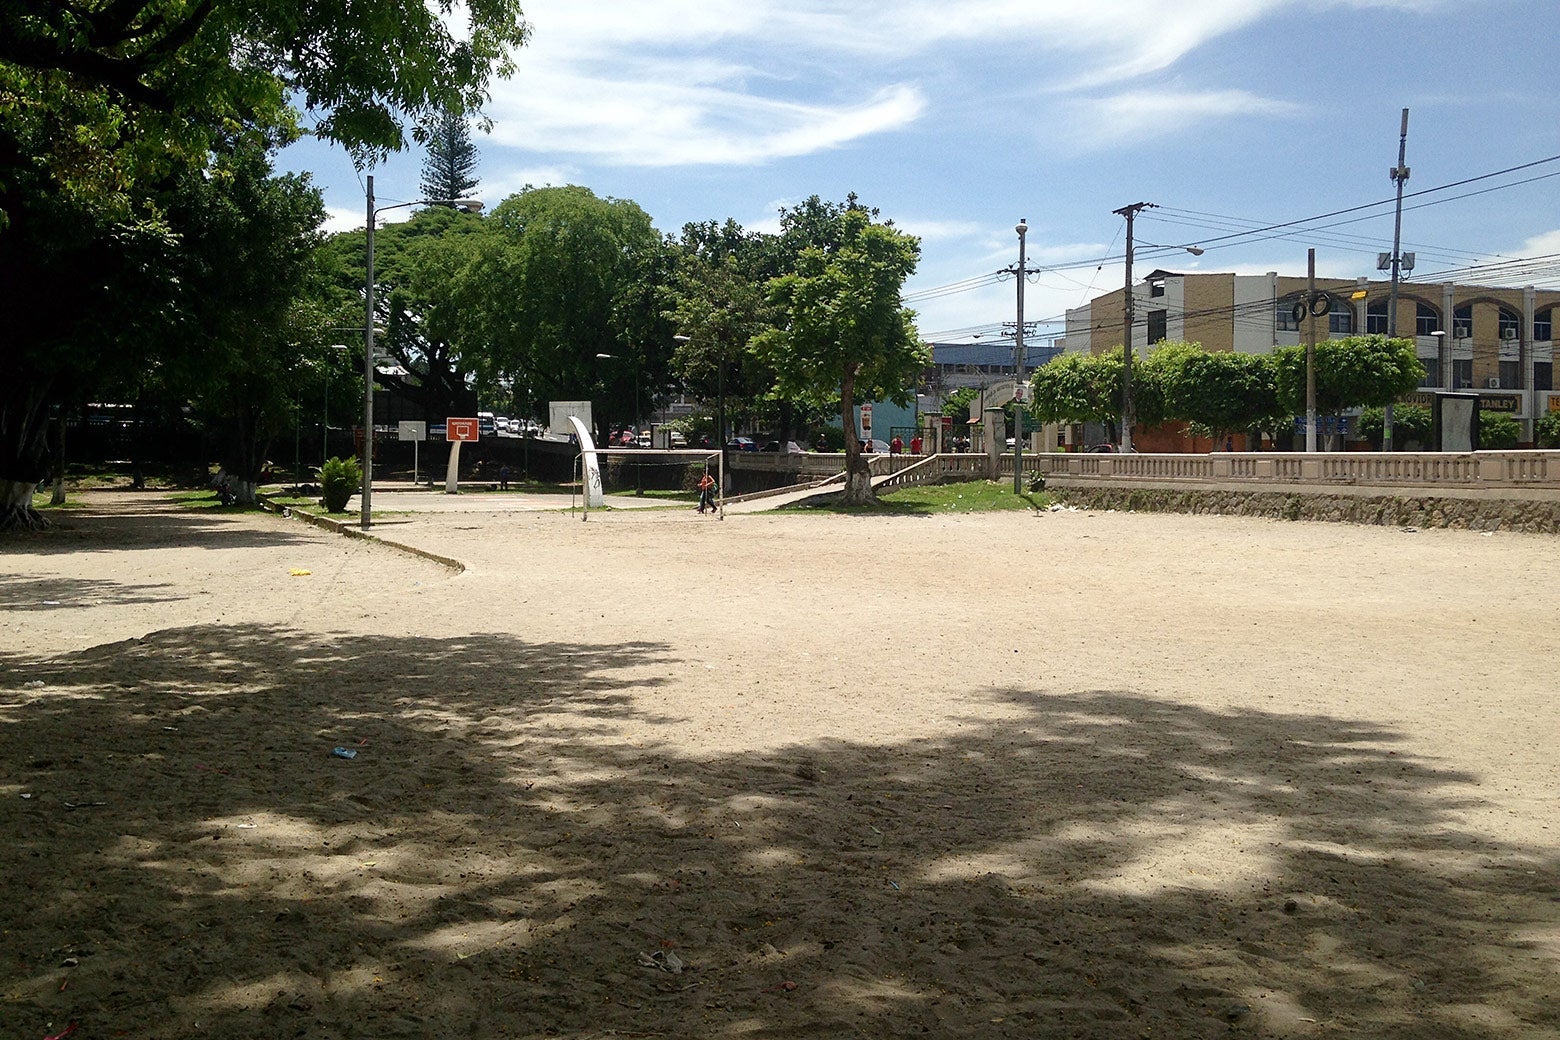 Parque Cucatlán before its recent renovation